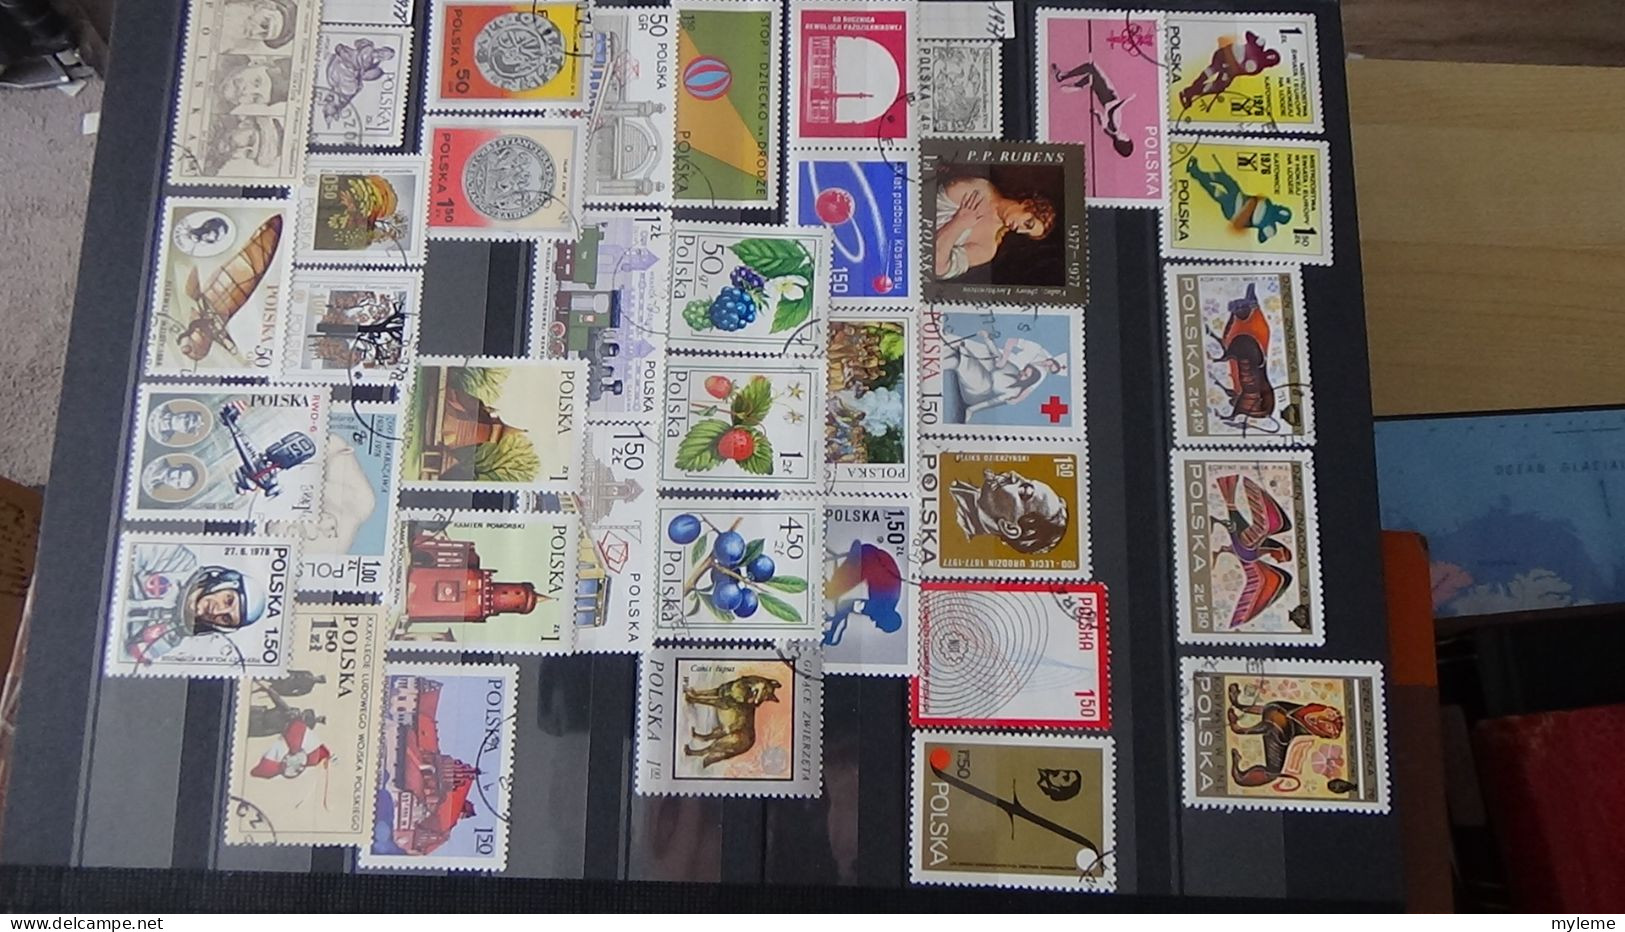 BF36 Ensemble de timbres de divers pays + France N° 182 ** Surcharge garantie authentique  Cote 980 euros